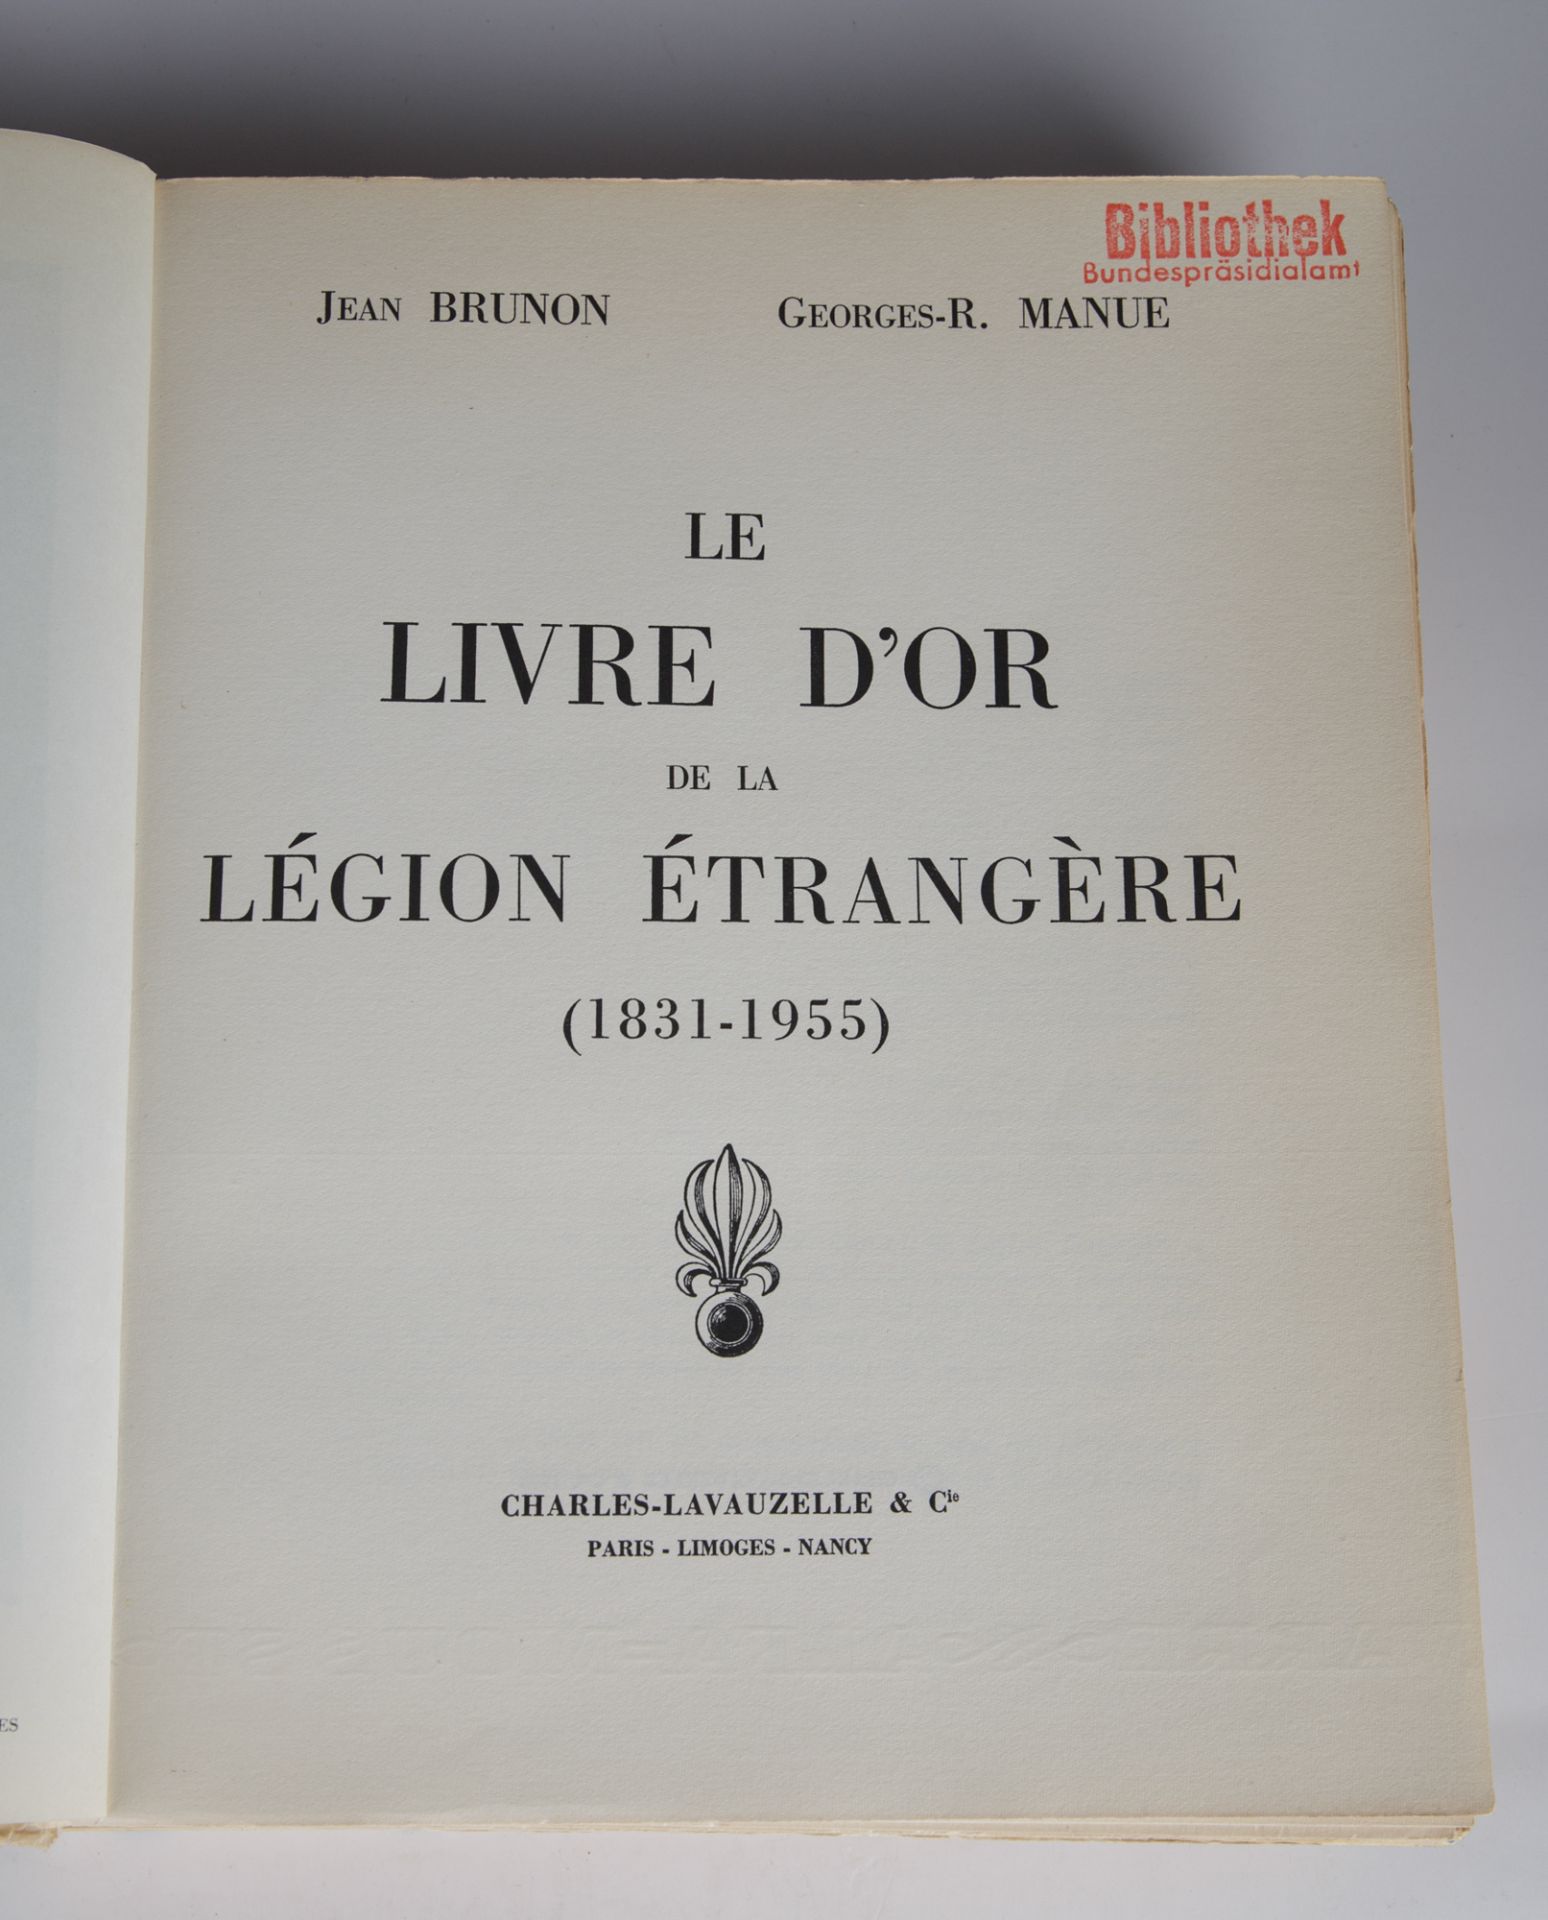 Le Livre D'Or de la Légion Étrangère 1831-1955 (Das goldene Buch der Fremdenlegion) - Image 2 of 2